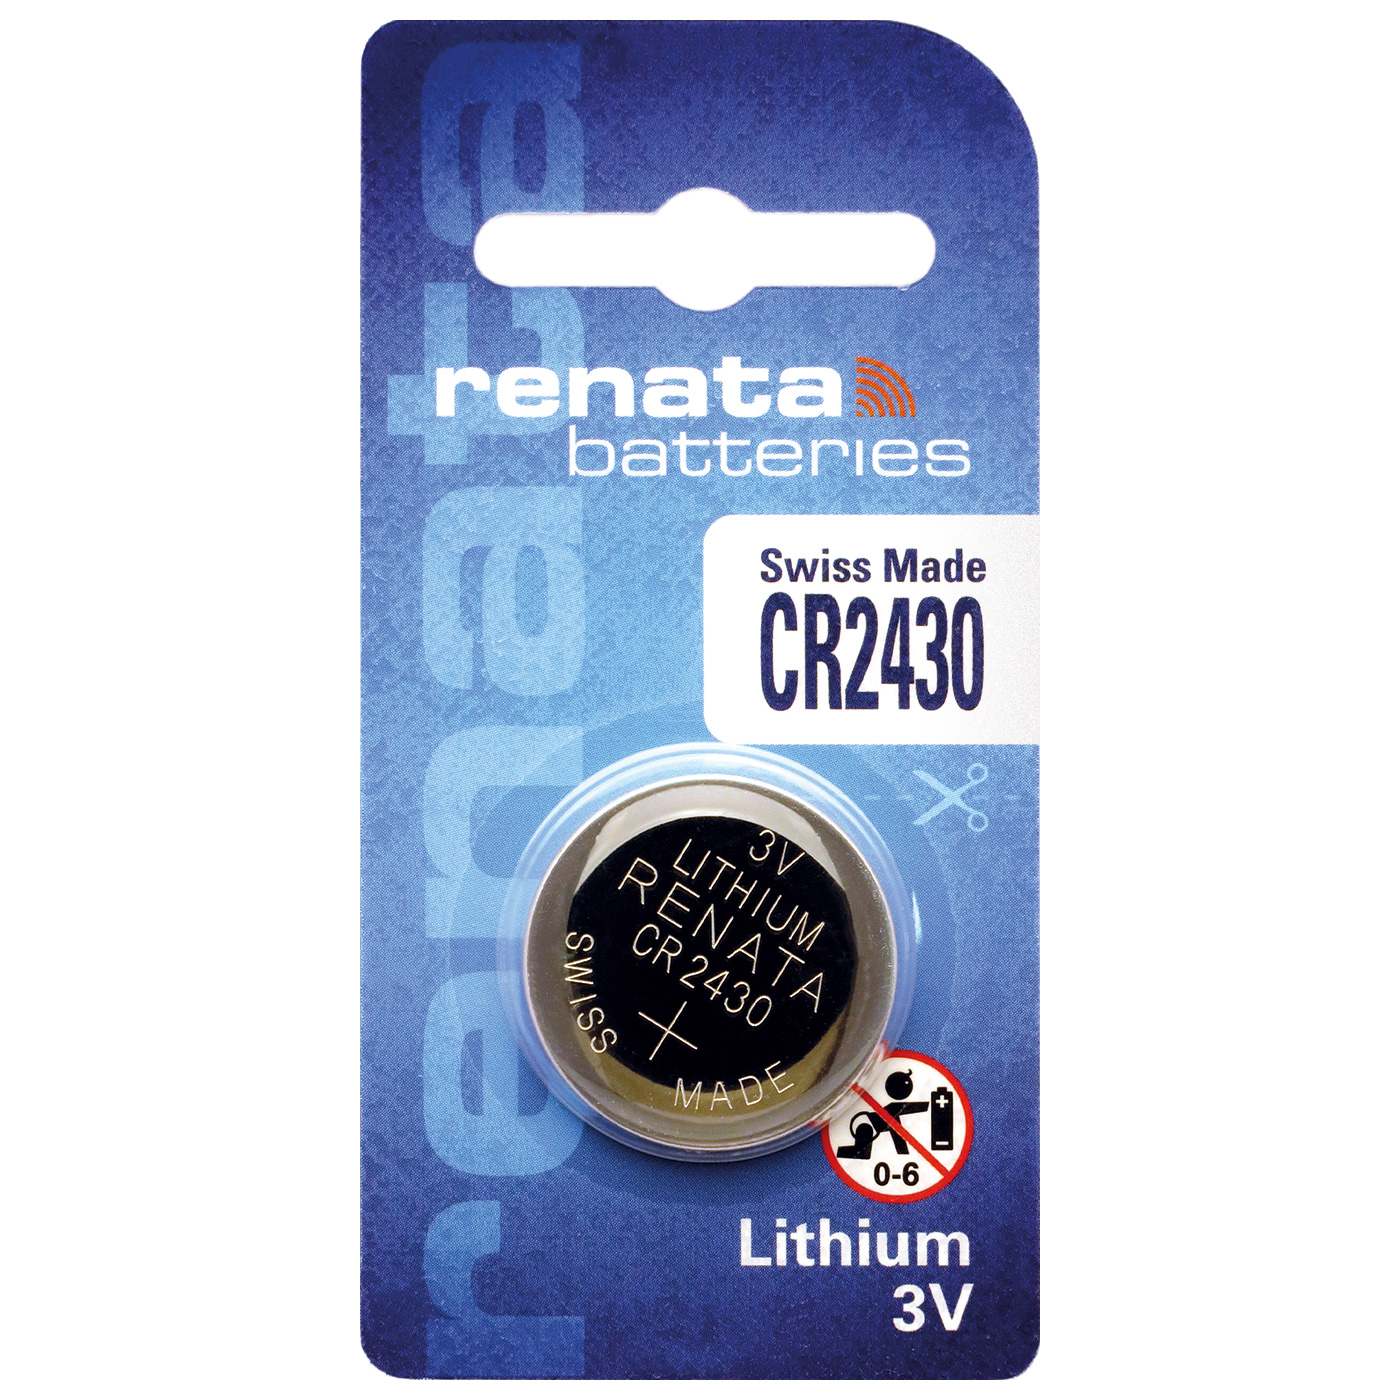 Renata CR 2430 lithium